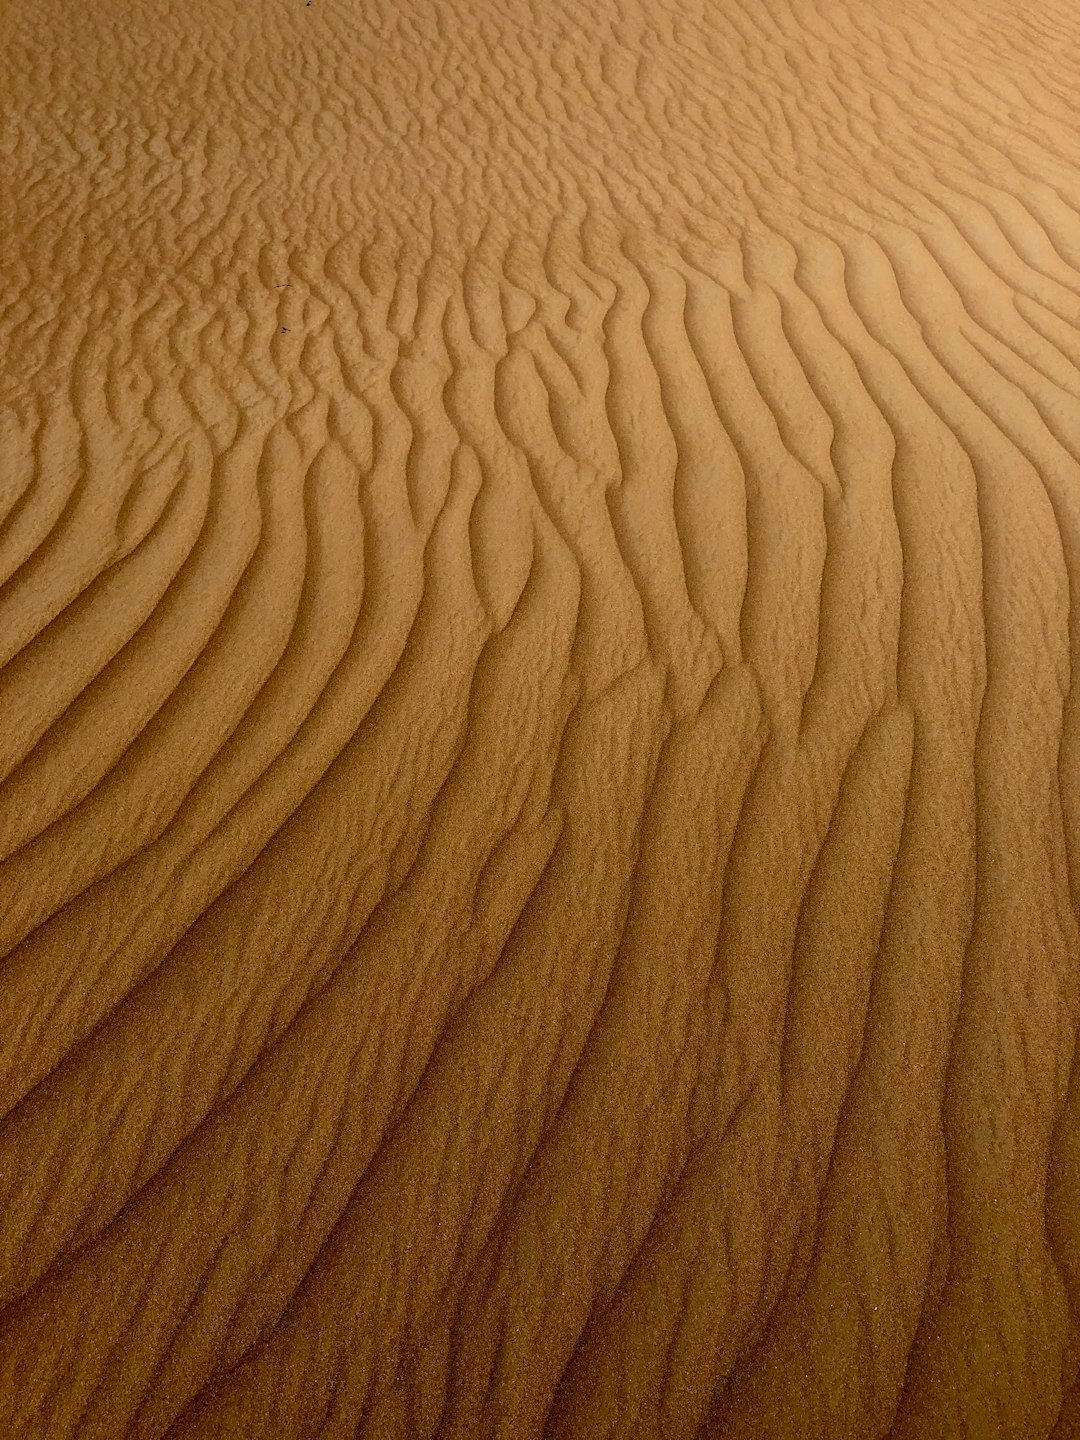 Desert photo spot Margham Sharjah Desert Park